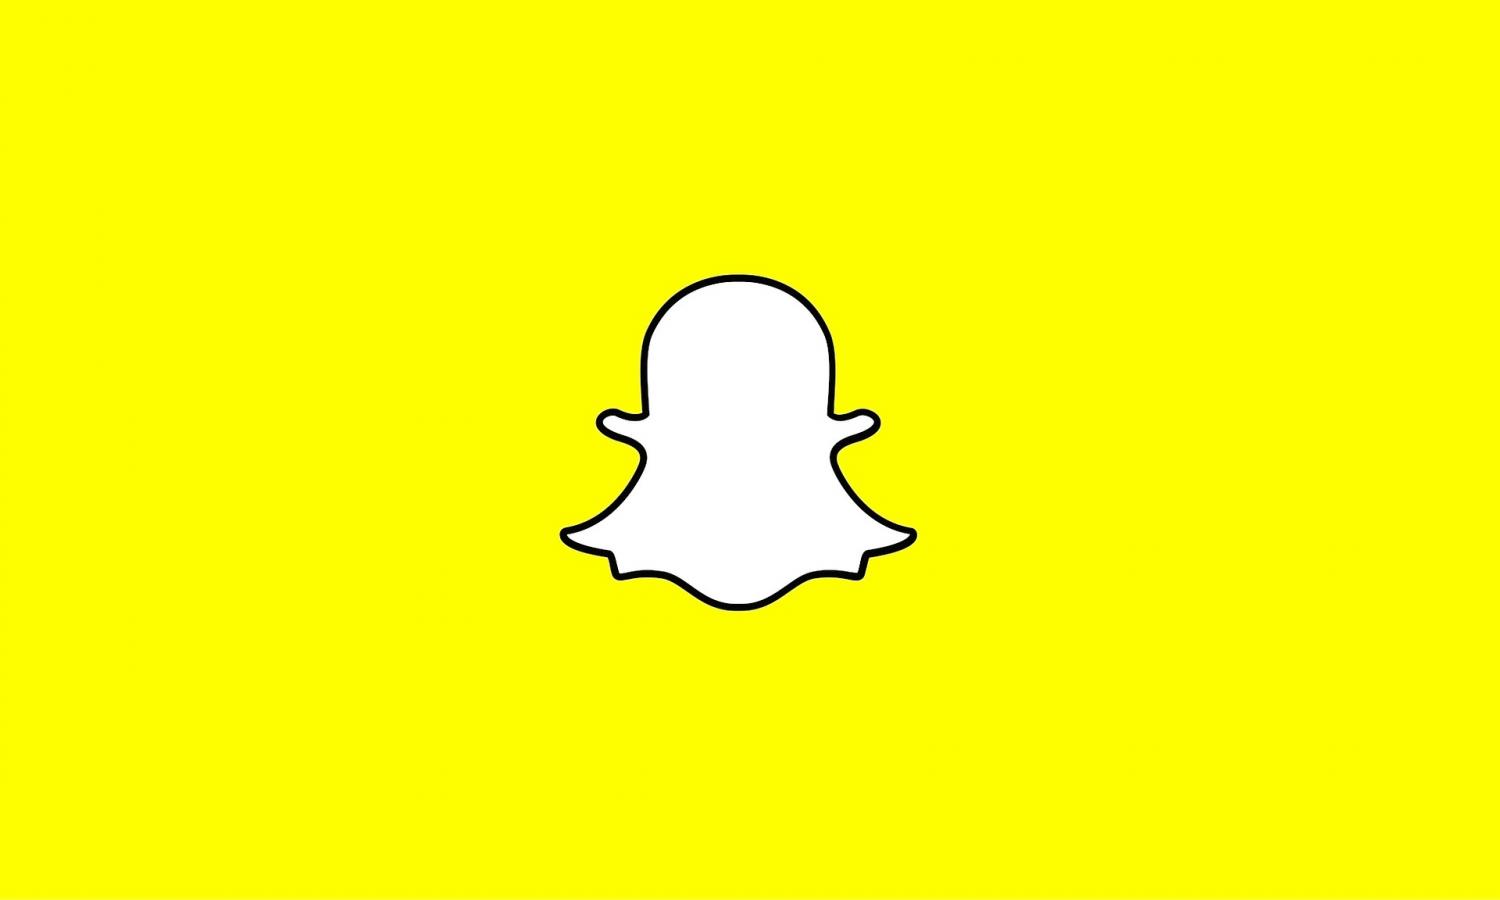 Snap lance le service d'abonnement payant Snapchat Plus